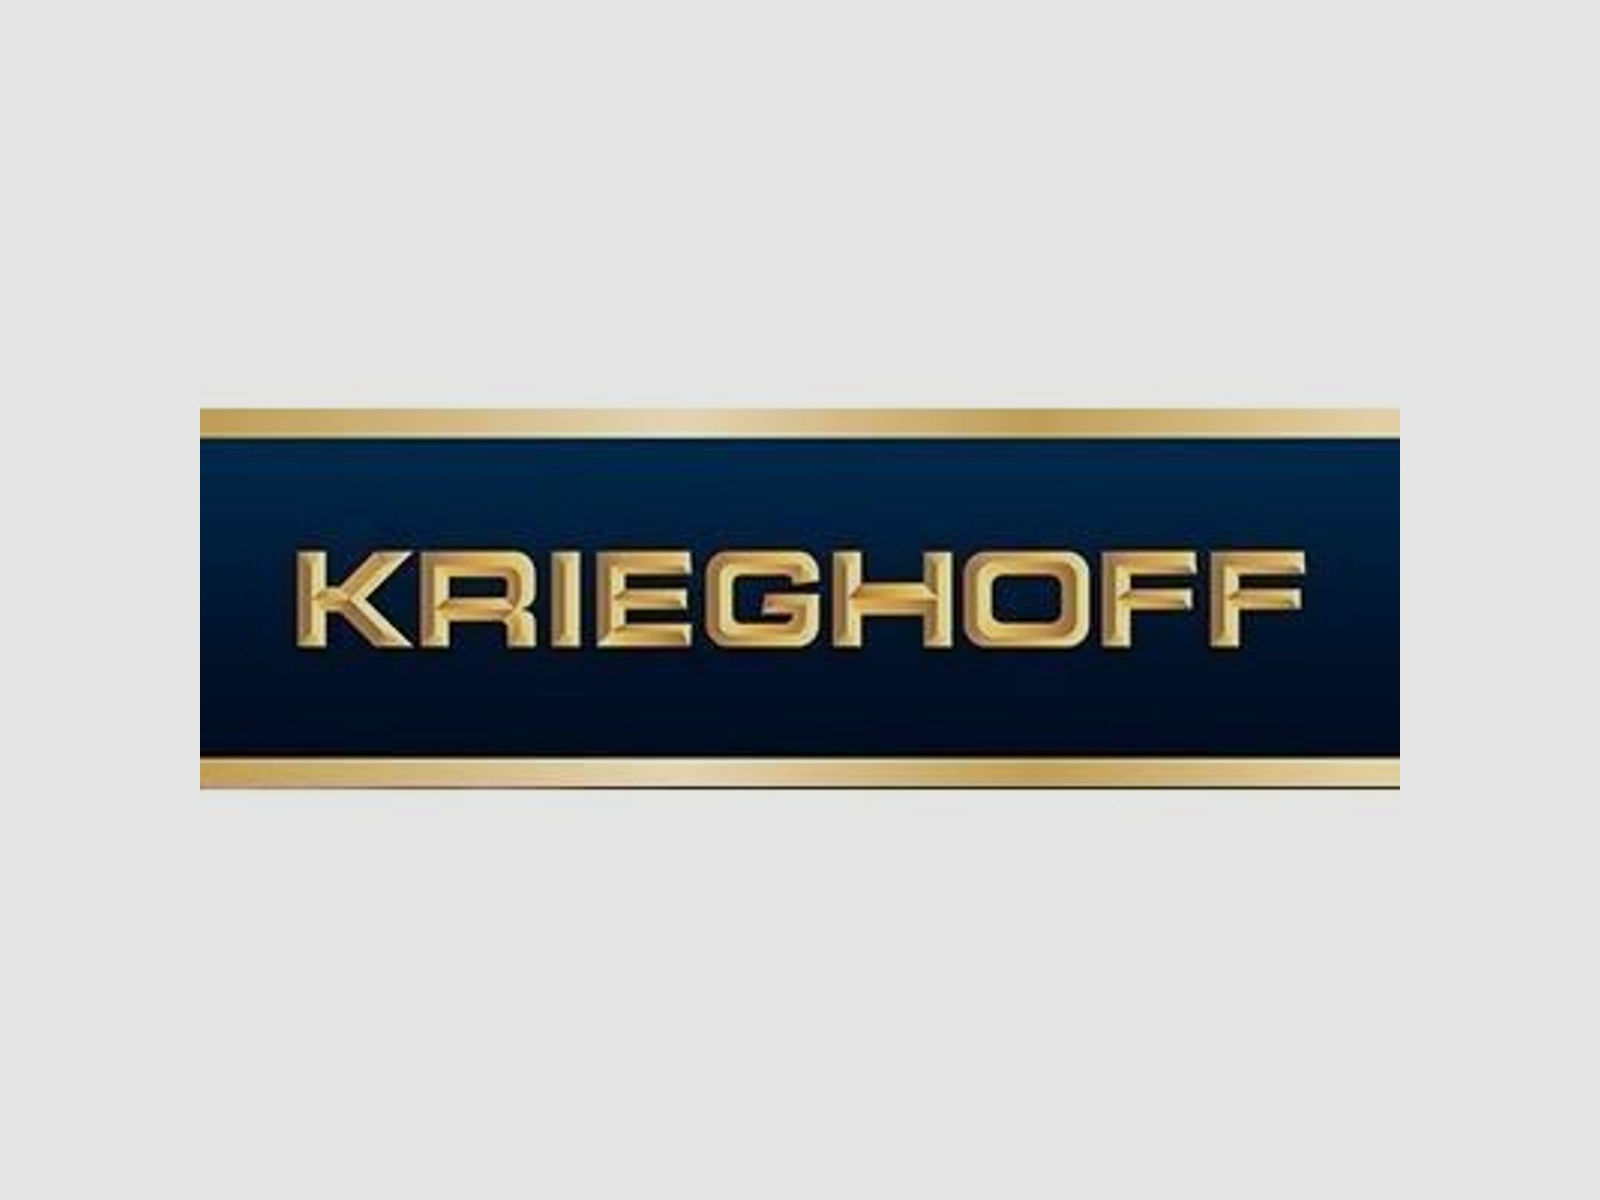 KRIEGHOFF Mehrpreis für Neuwaffe Schaftholz #2 - Mehrpreis Optima-Ultra-Classic-Hubertus